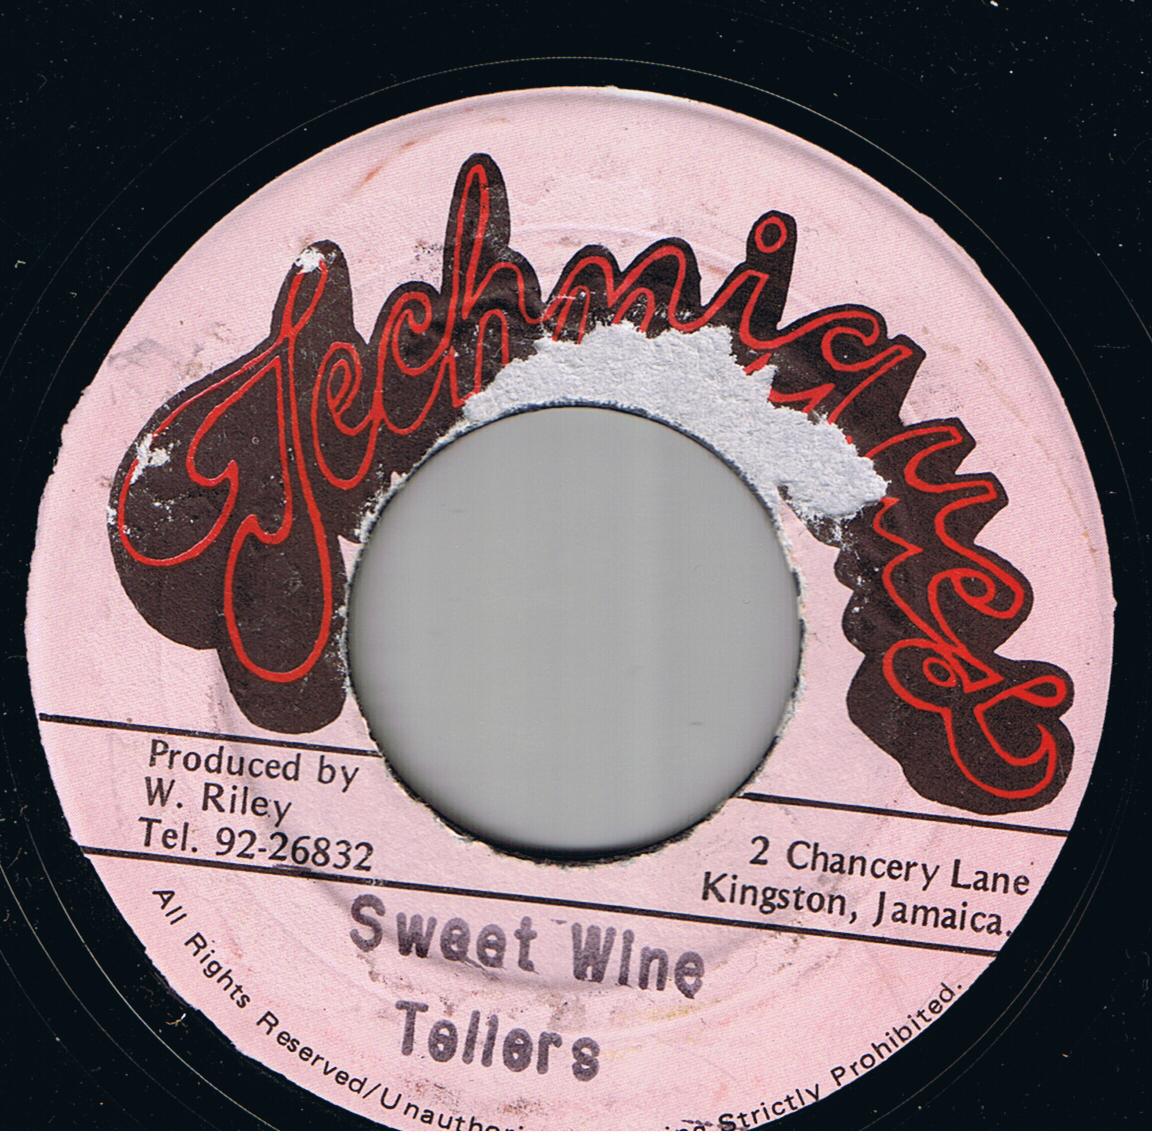 The Tellers - Sweet Wine / Version (7")